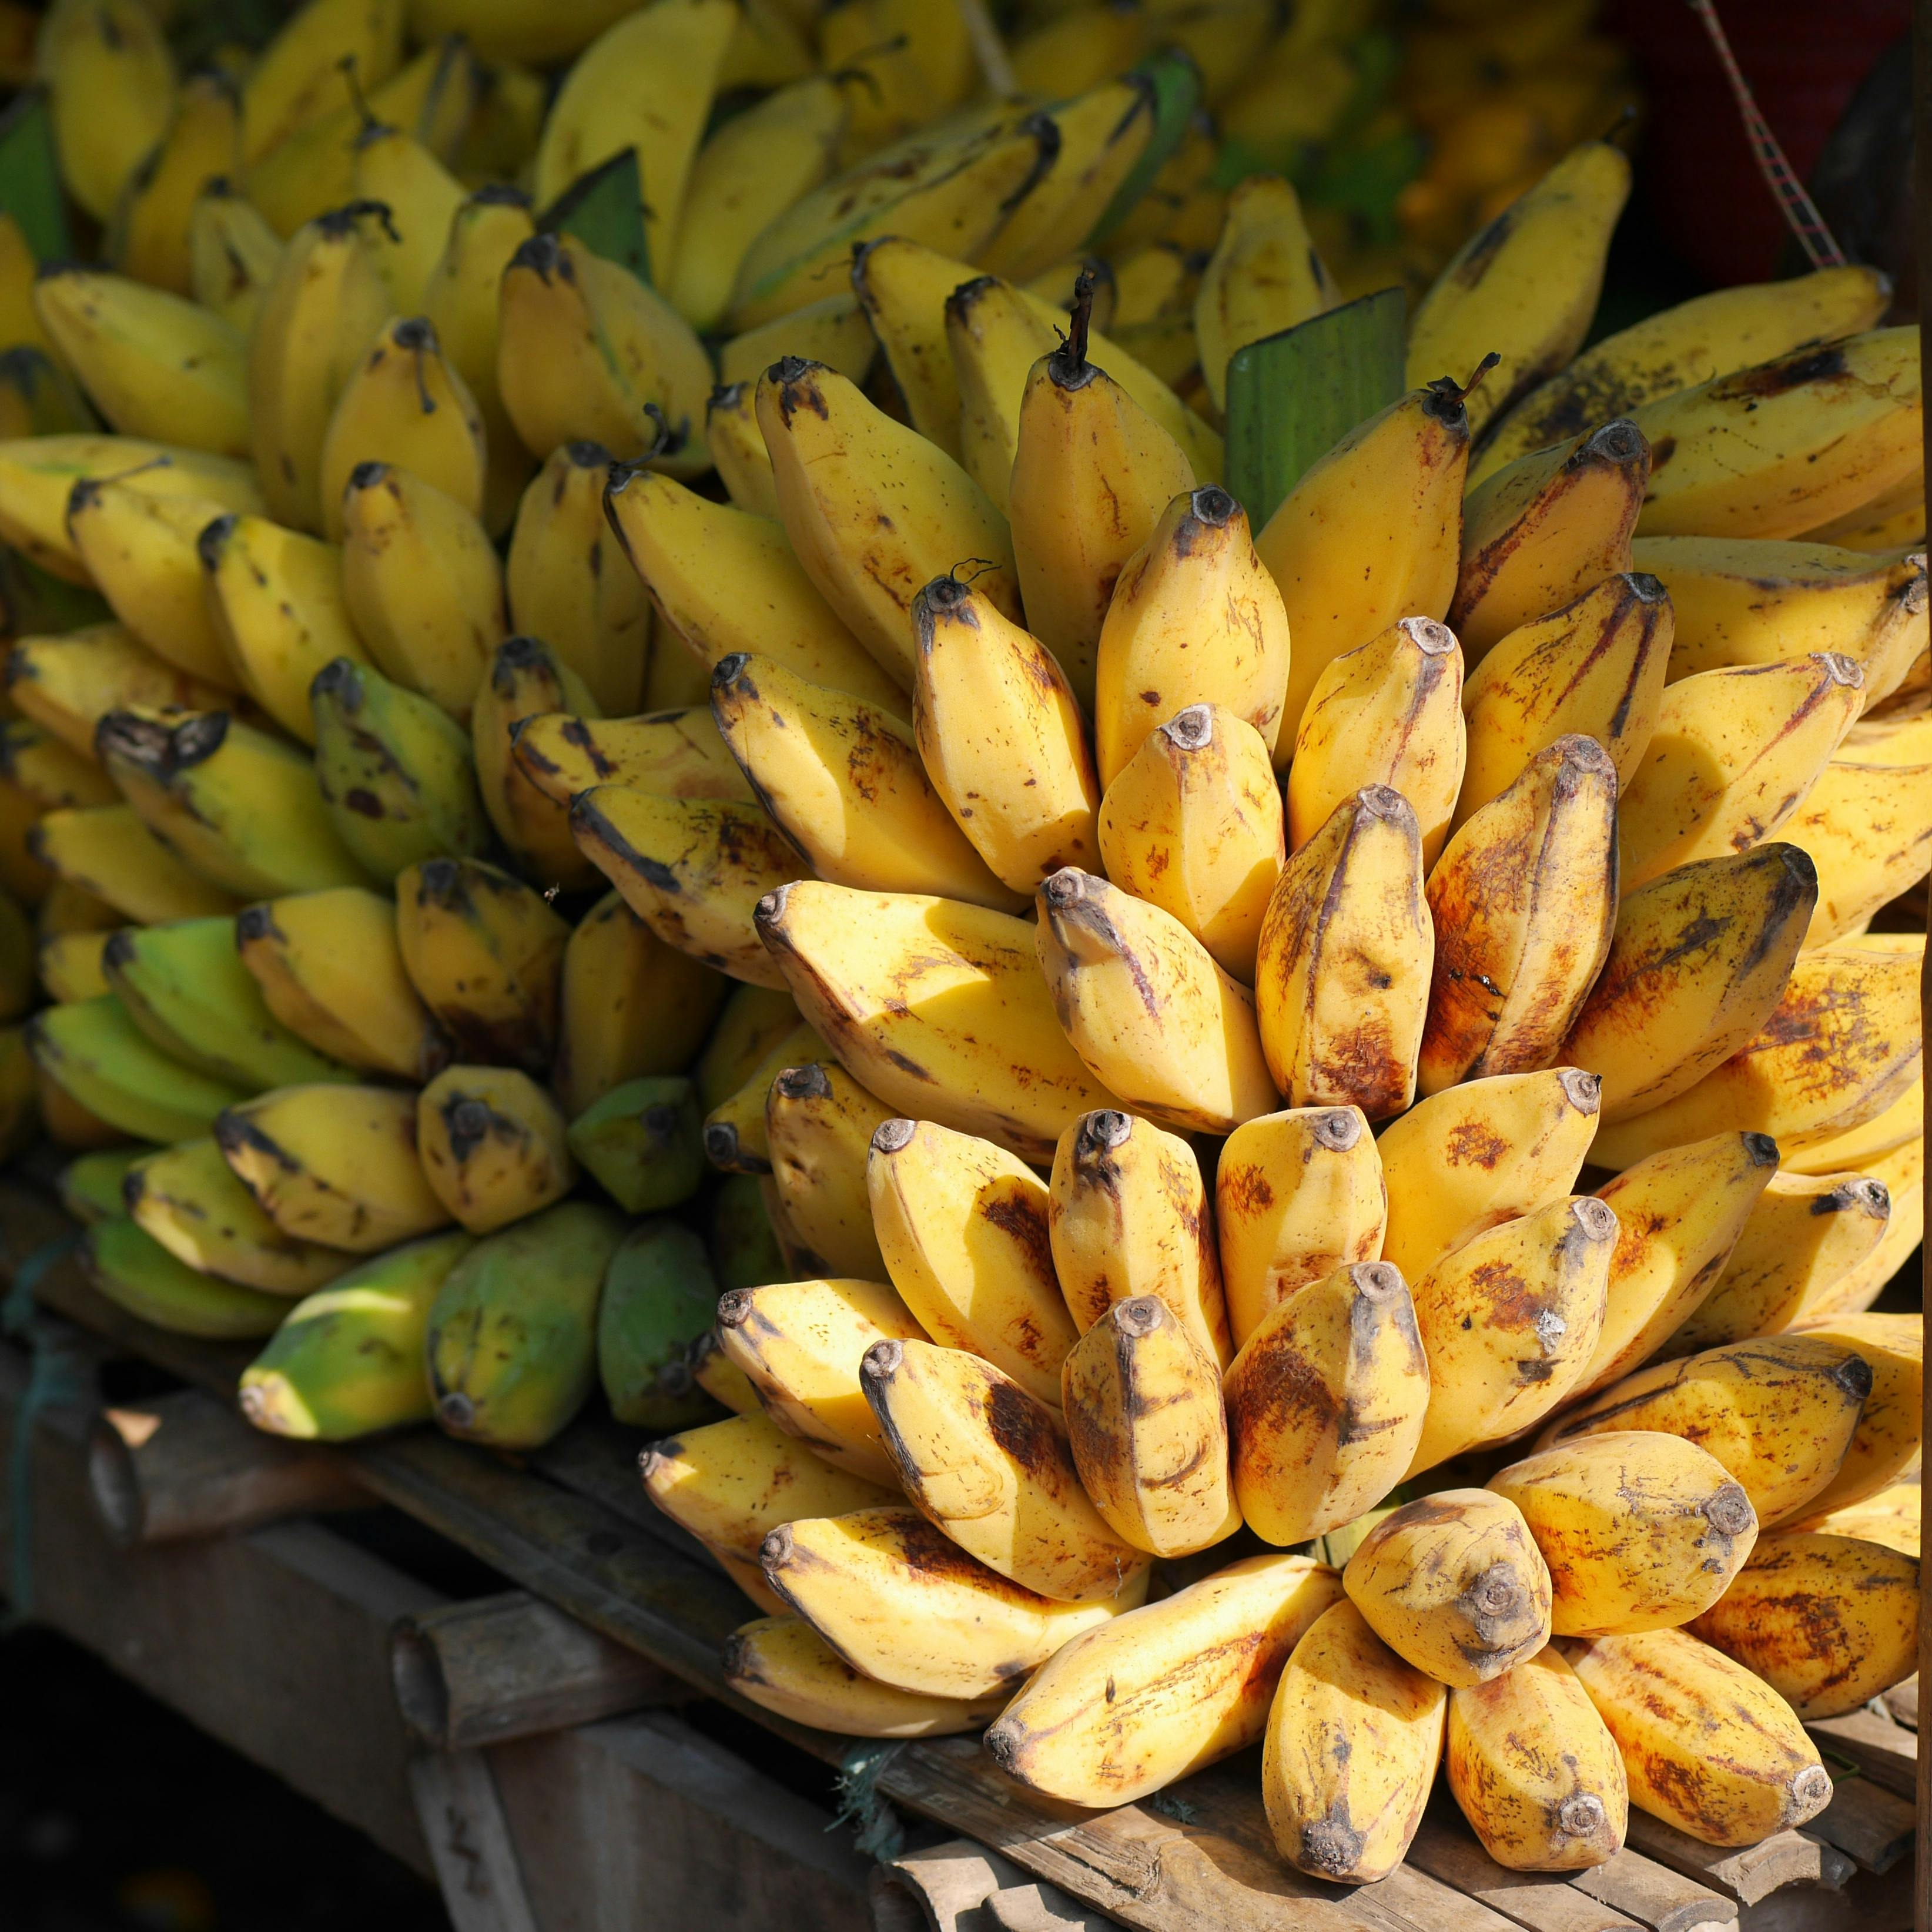 Kostenloses Foto zum Thema: bananen, essen, früchte